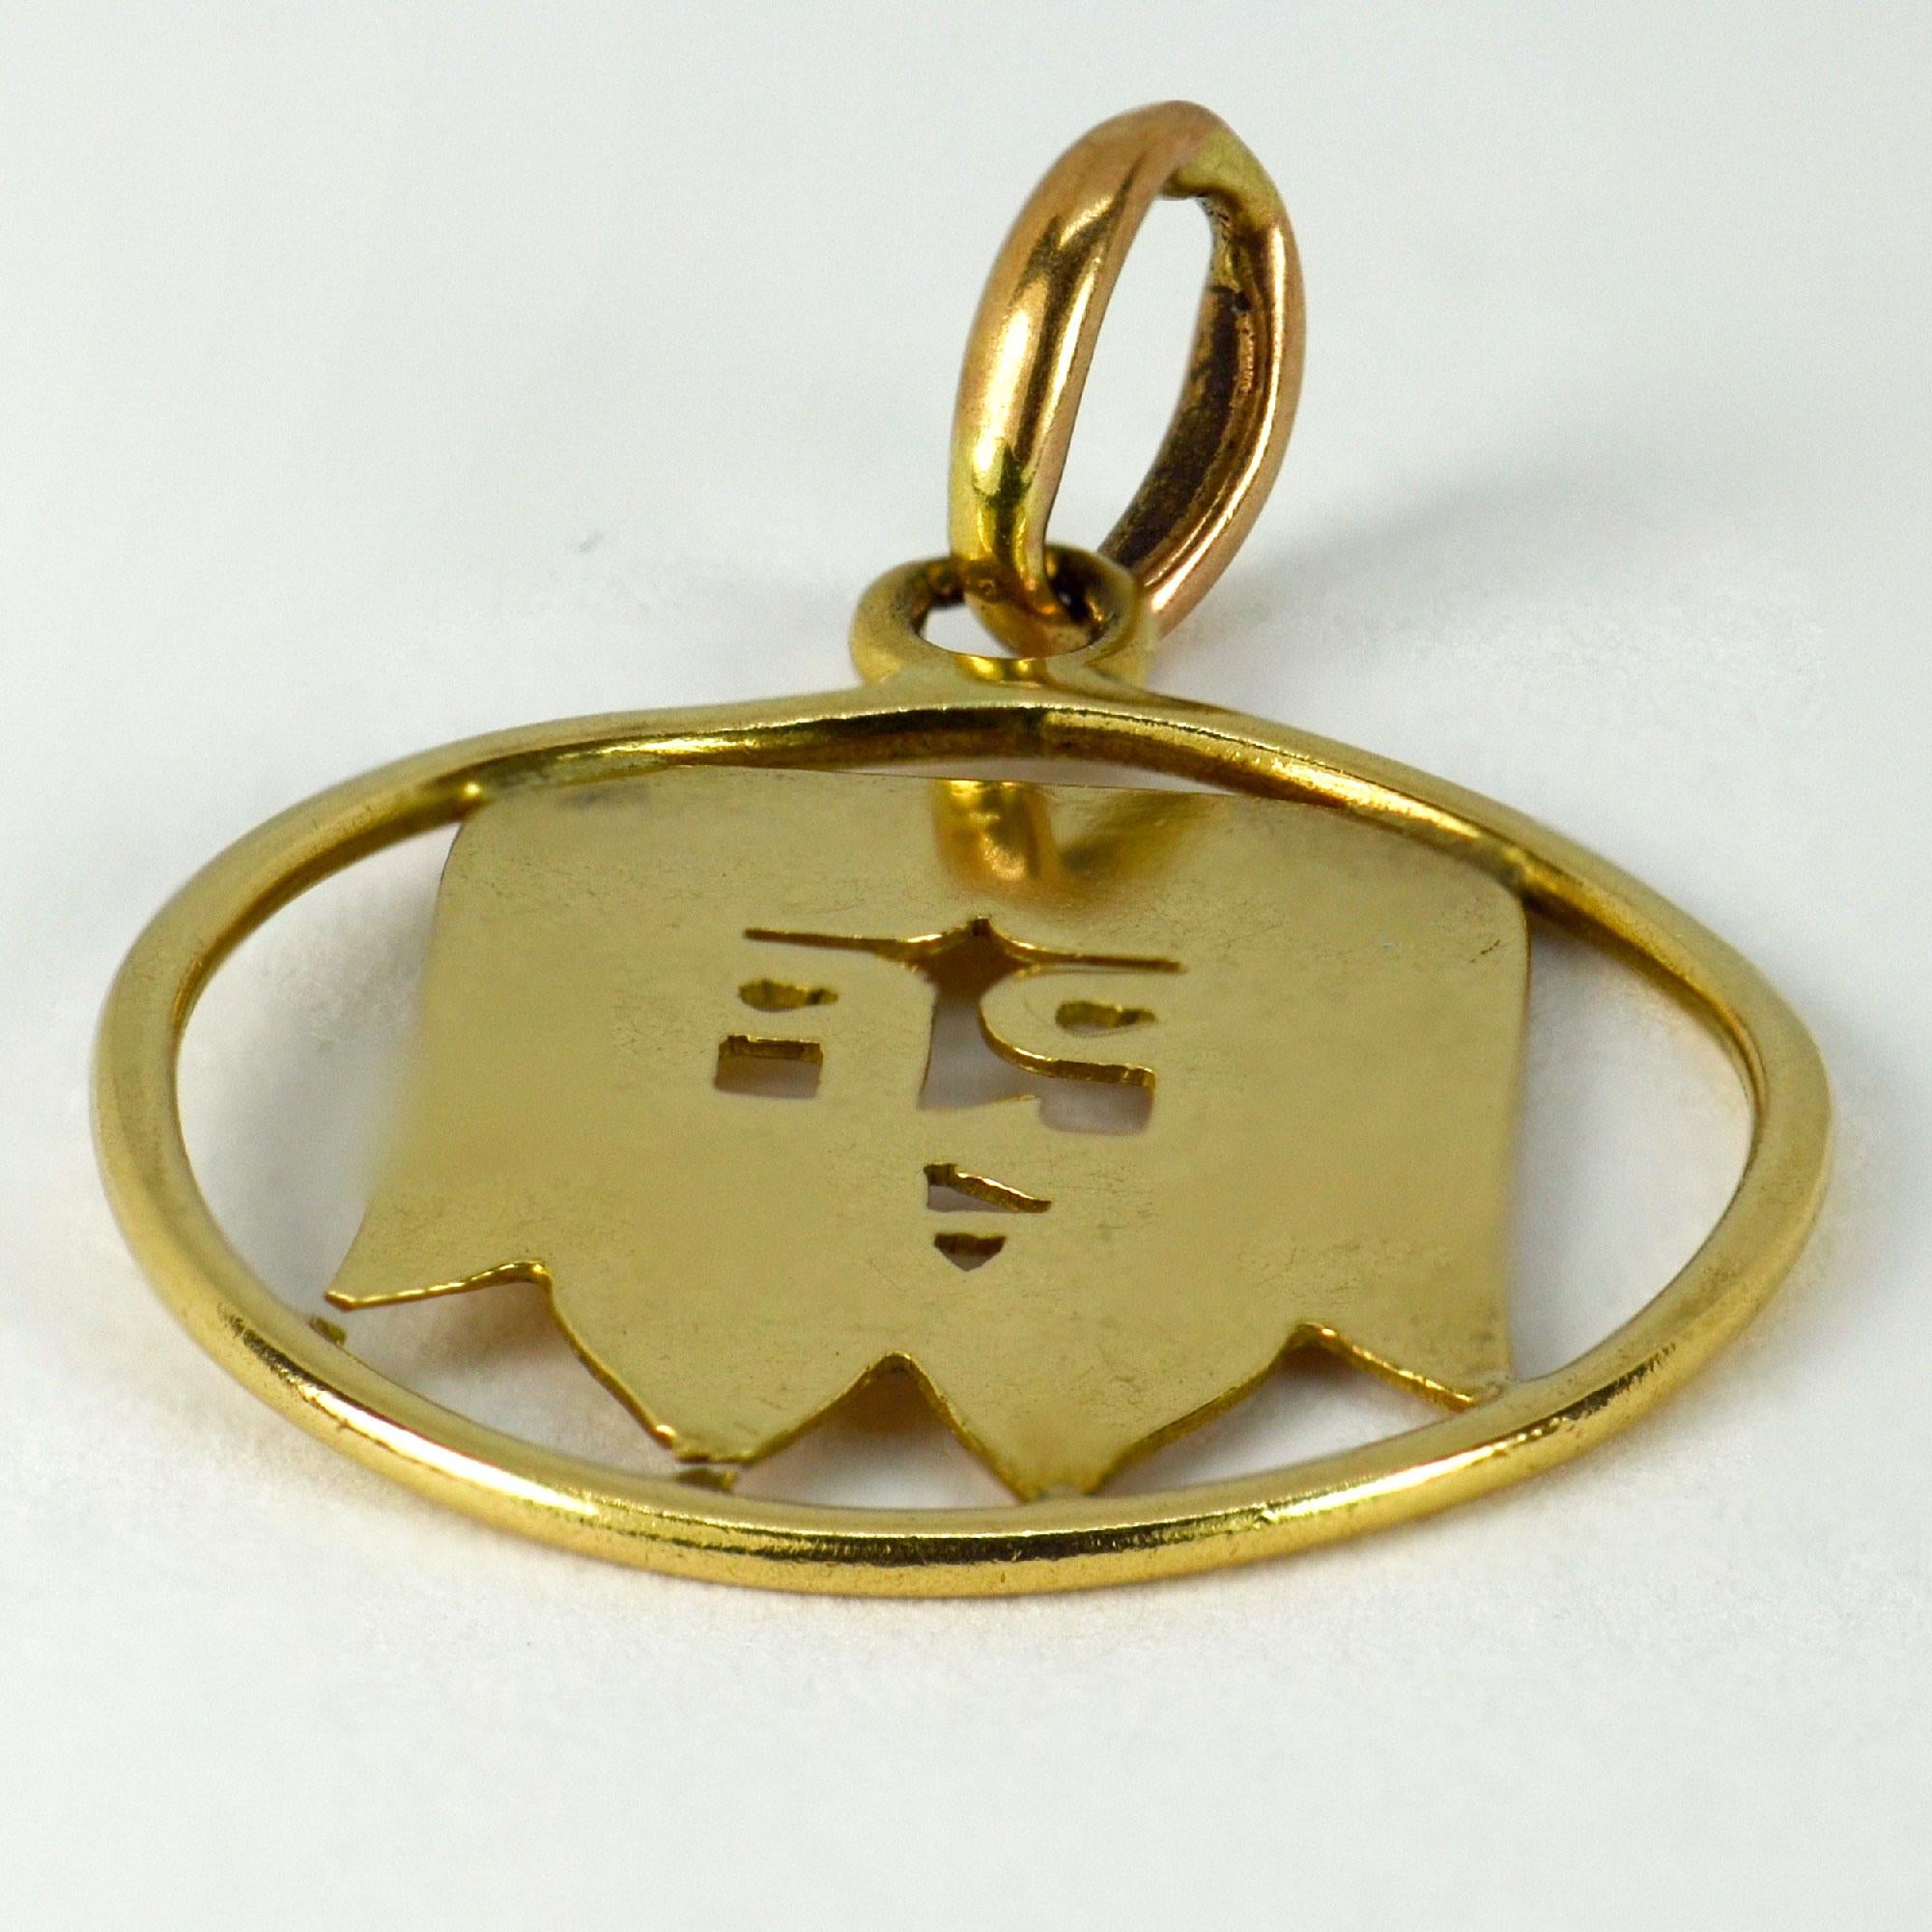 Un pendentif français en or jaune 18 carats (18K) conçu comme une représentation percée du visage de Jésus. Estampillé du poinçon de la chouette pour l'or 18 carats et l'importation française. 

Dimensions : 2.1 x 1,8 x 0,1 cm (sans l'anneau)
Poids